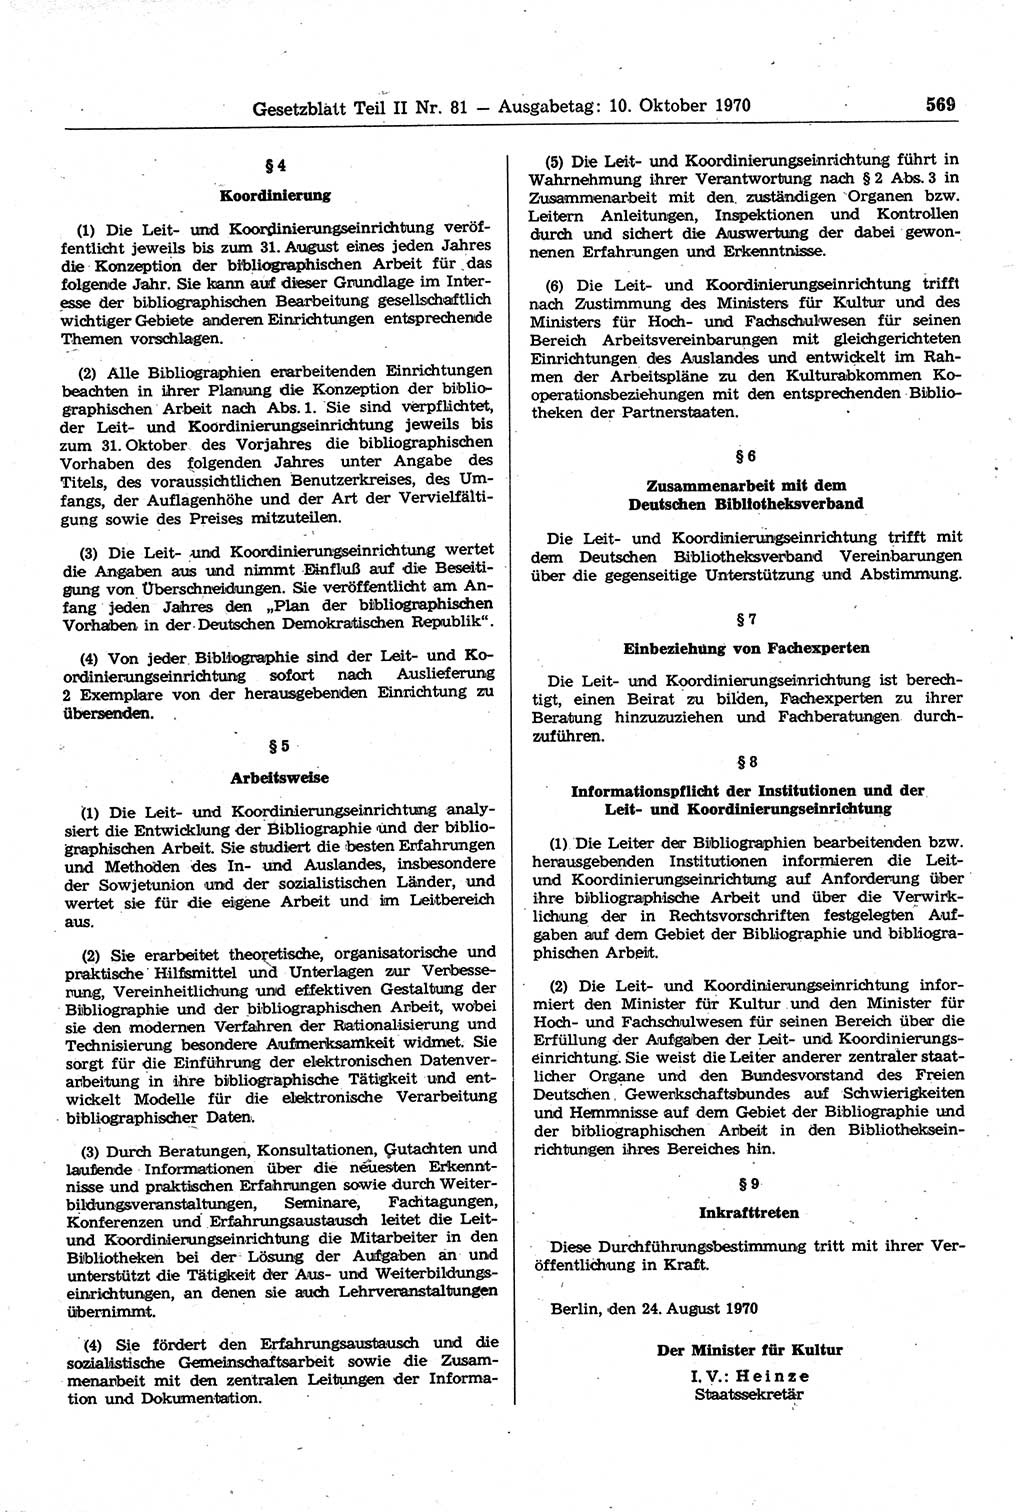 Gesetzblatt (GBl.) der Deutschen Demokratischen Republik (DDR) Teil ⅠⅠ 1970, Seite 569 (GBl. DDR ⅠⅠ 1970, S. 569)